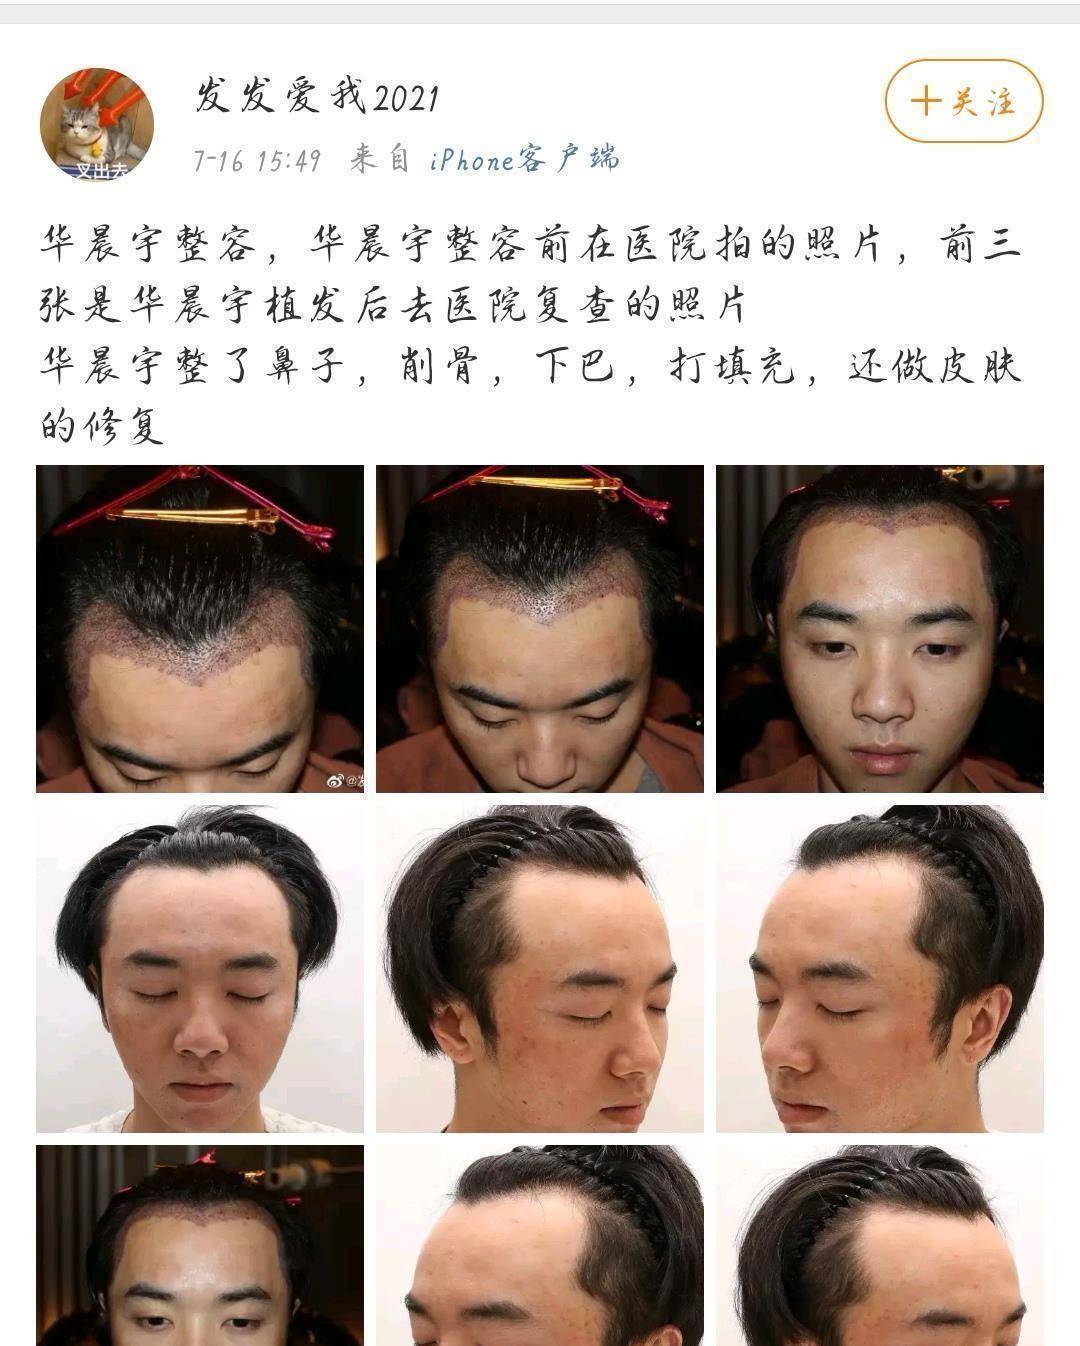 网友称华晨宇是自己老公,还晒出多张华晨宇植发照片,称张碧晨是小三